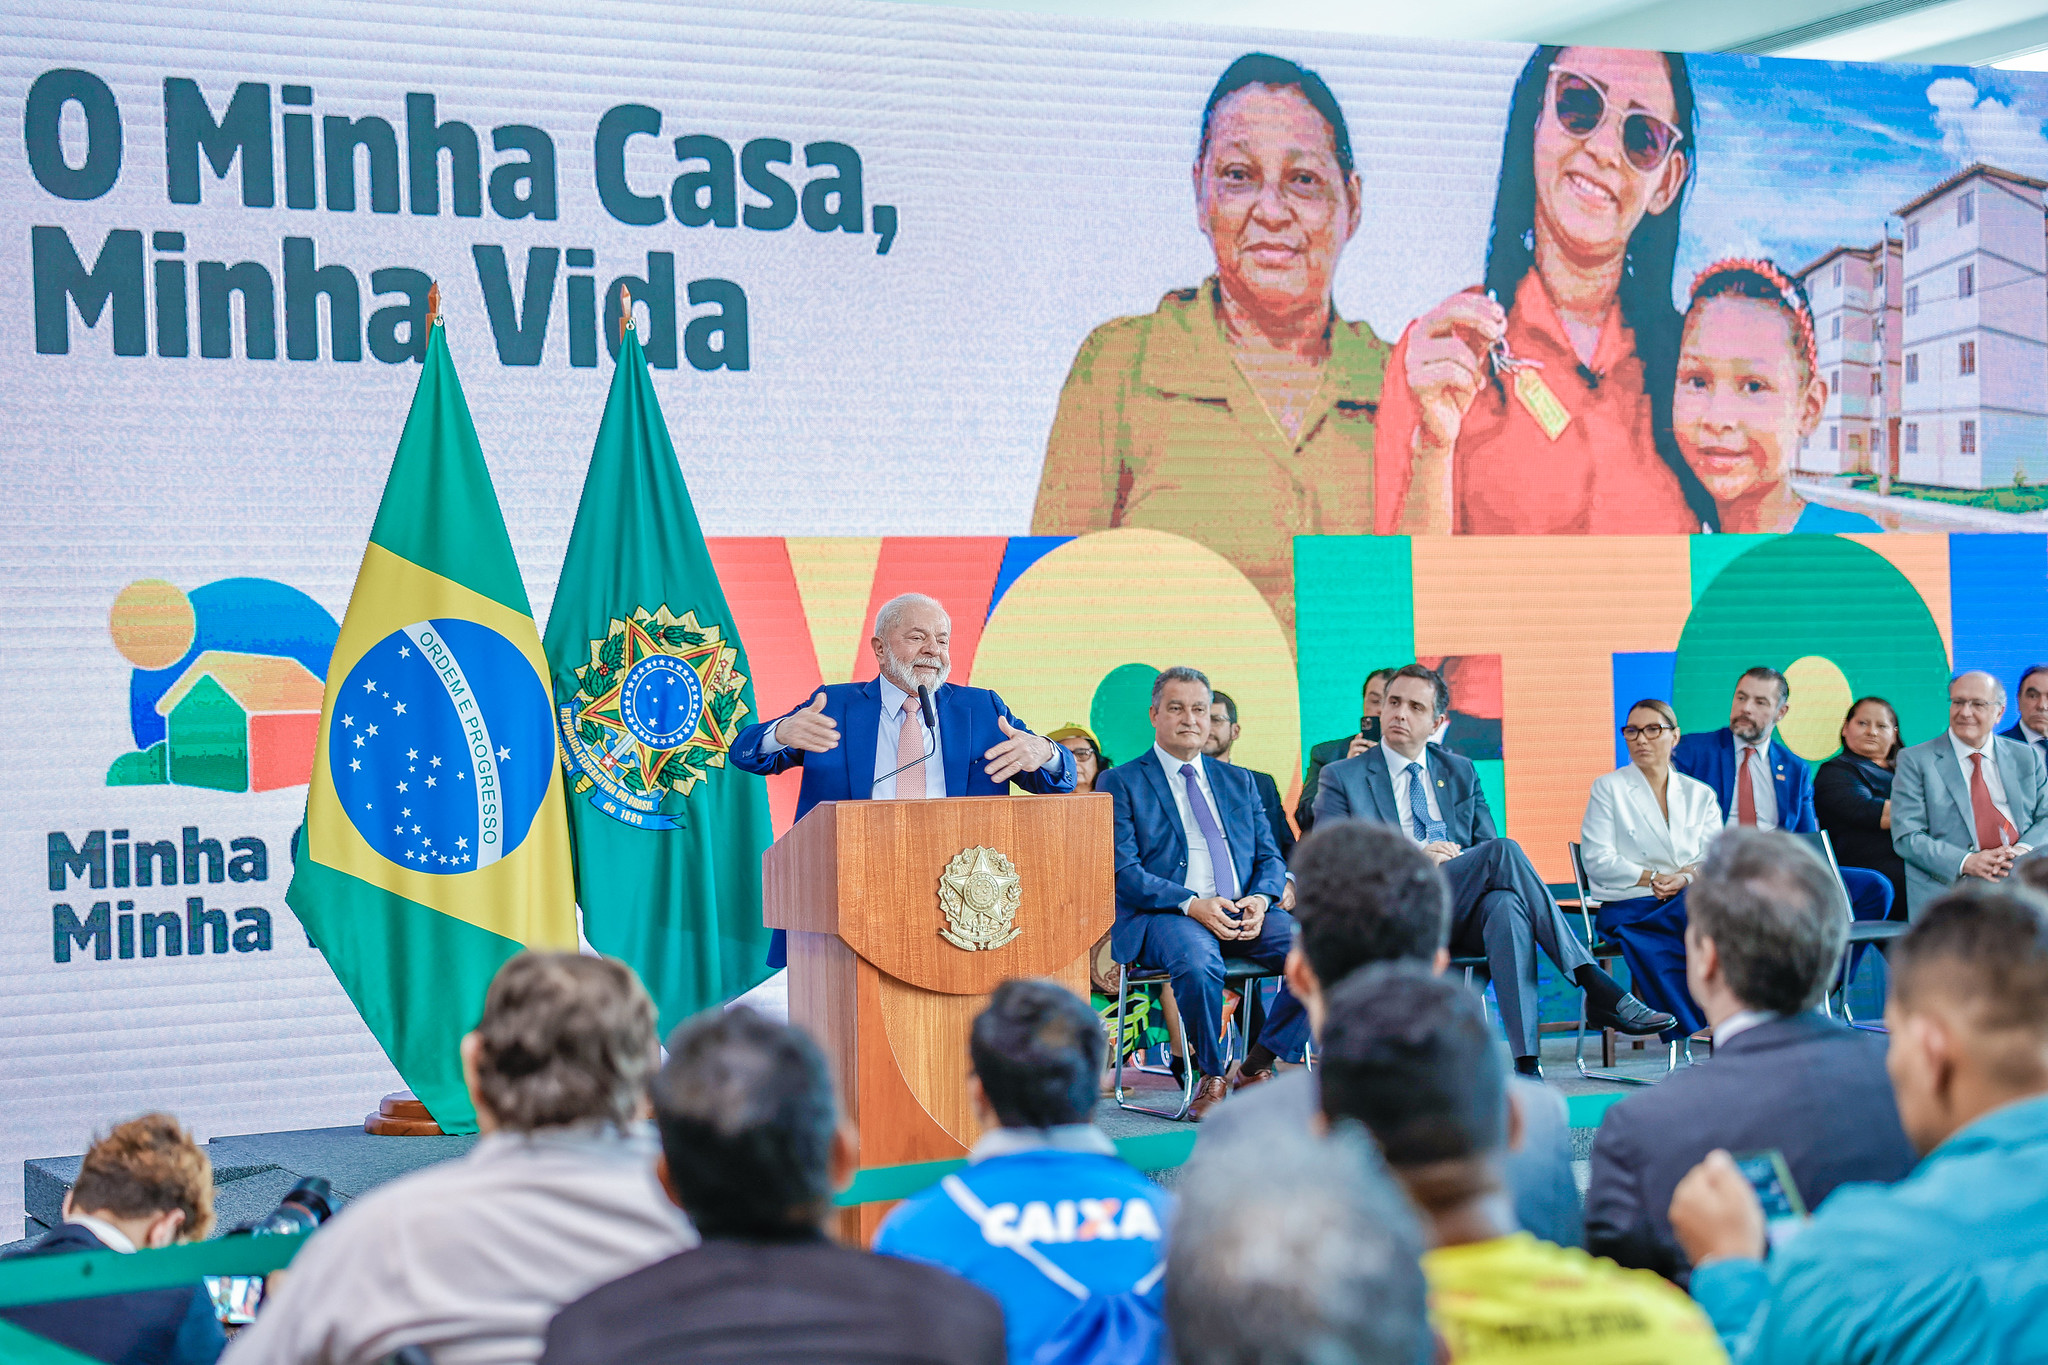 Governo veta parte de política para painéis solares no Minha Casa Minha Vida. Na imagem: Presidente Lula (PT) durante cerimônia de sanção do Novo Minha Casa, Minha Vida, em Brasília em 13/7/23 (Foto: Ricardo Stuckert/PR)